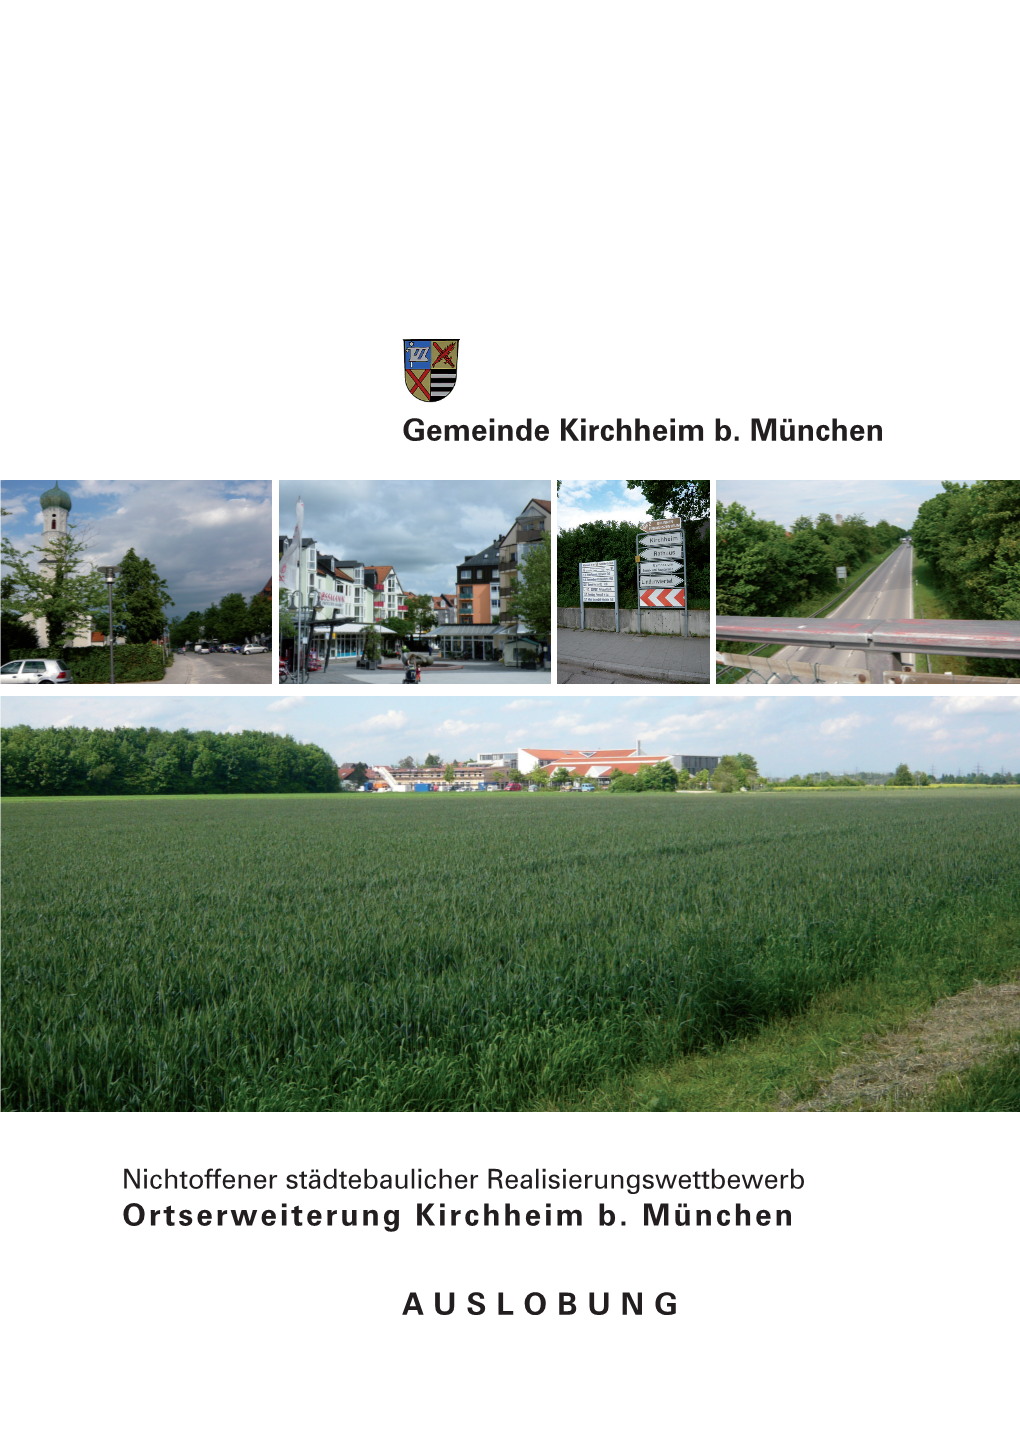 Ortserweiterung Kirchheim B. München Auslobung Gemeinde